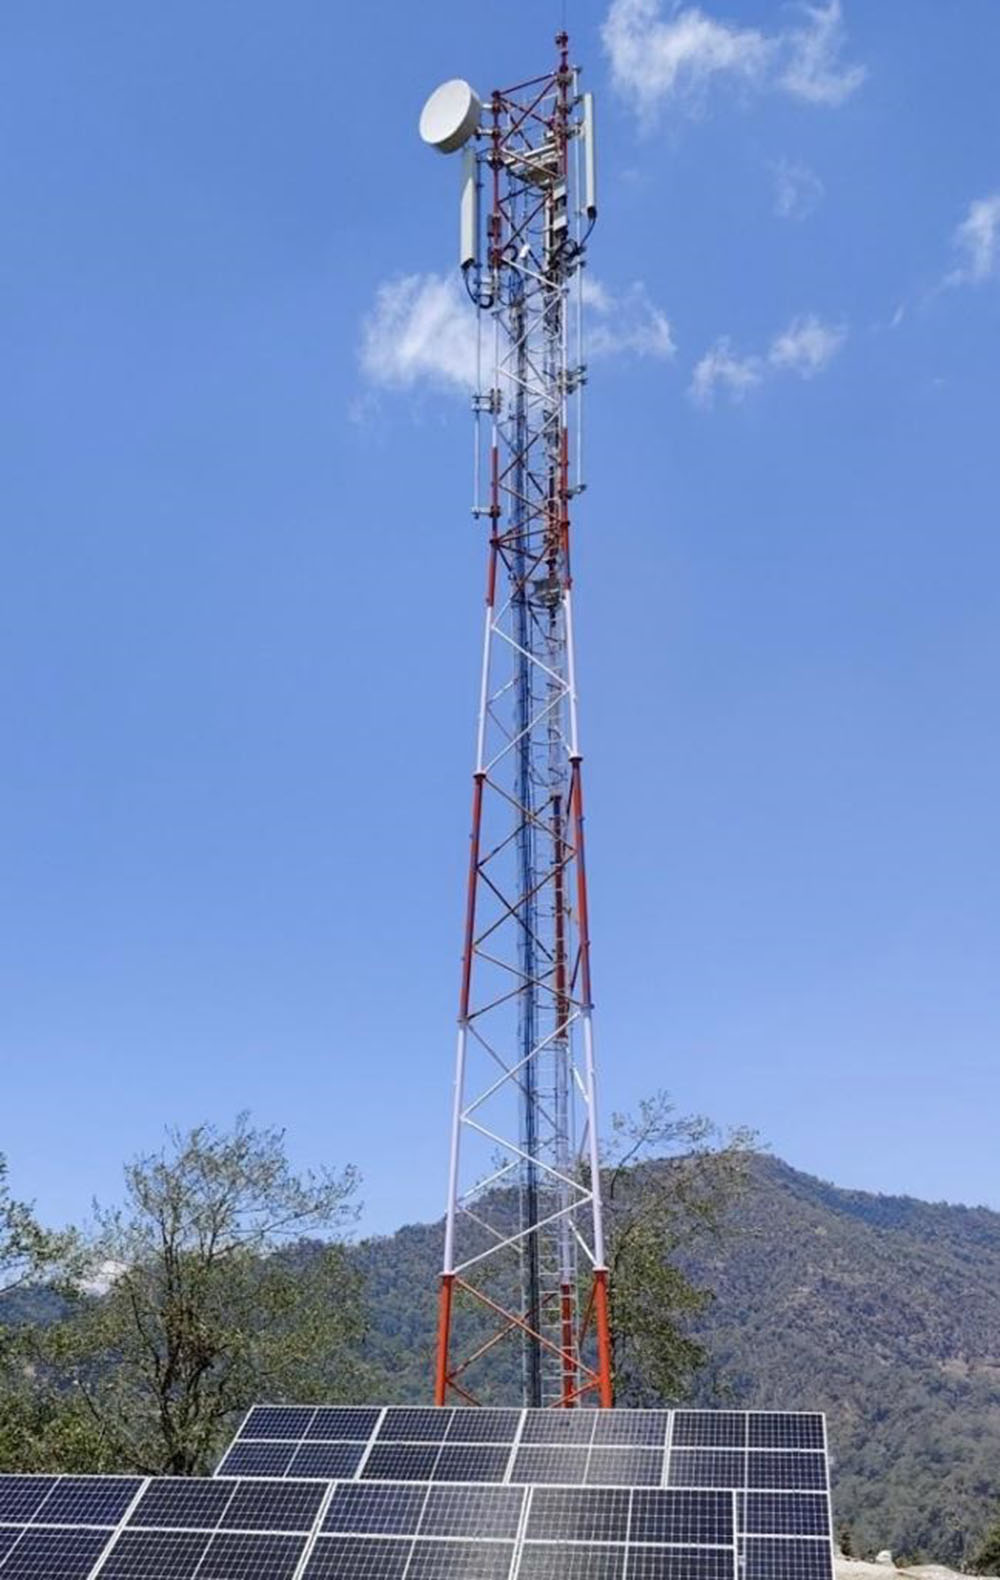 एनसेलद्वारा गत आर्थिक वर्षमा सेवा विस्तार र गुणस्तर सुधार गर्दै ३३८ नयाँ मोबाइल टावर जडान